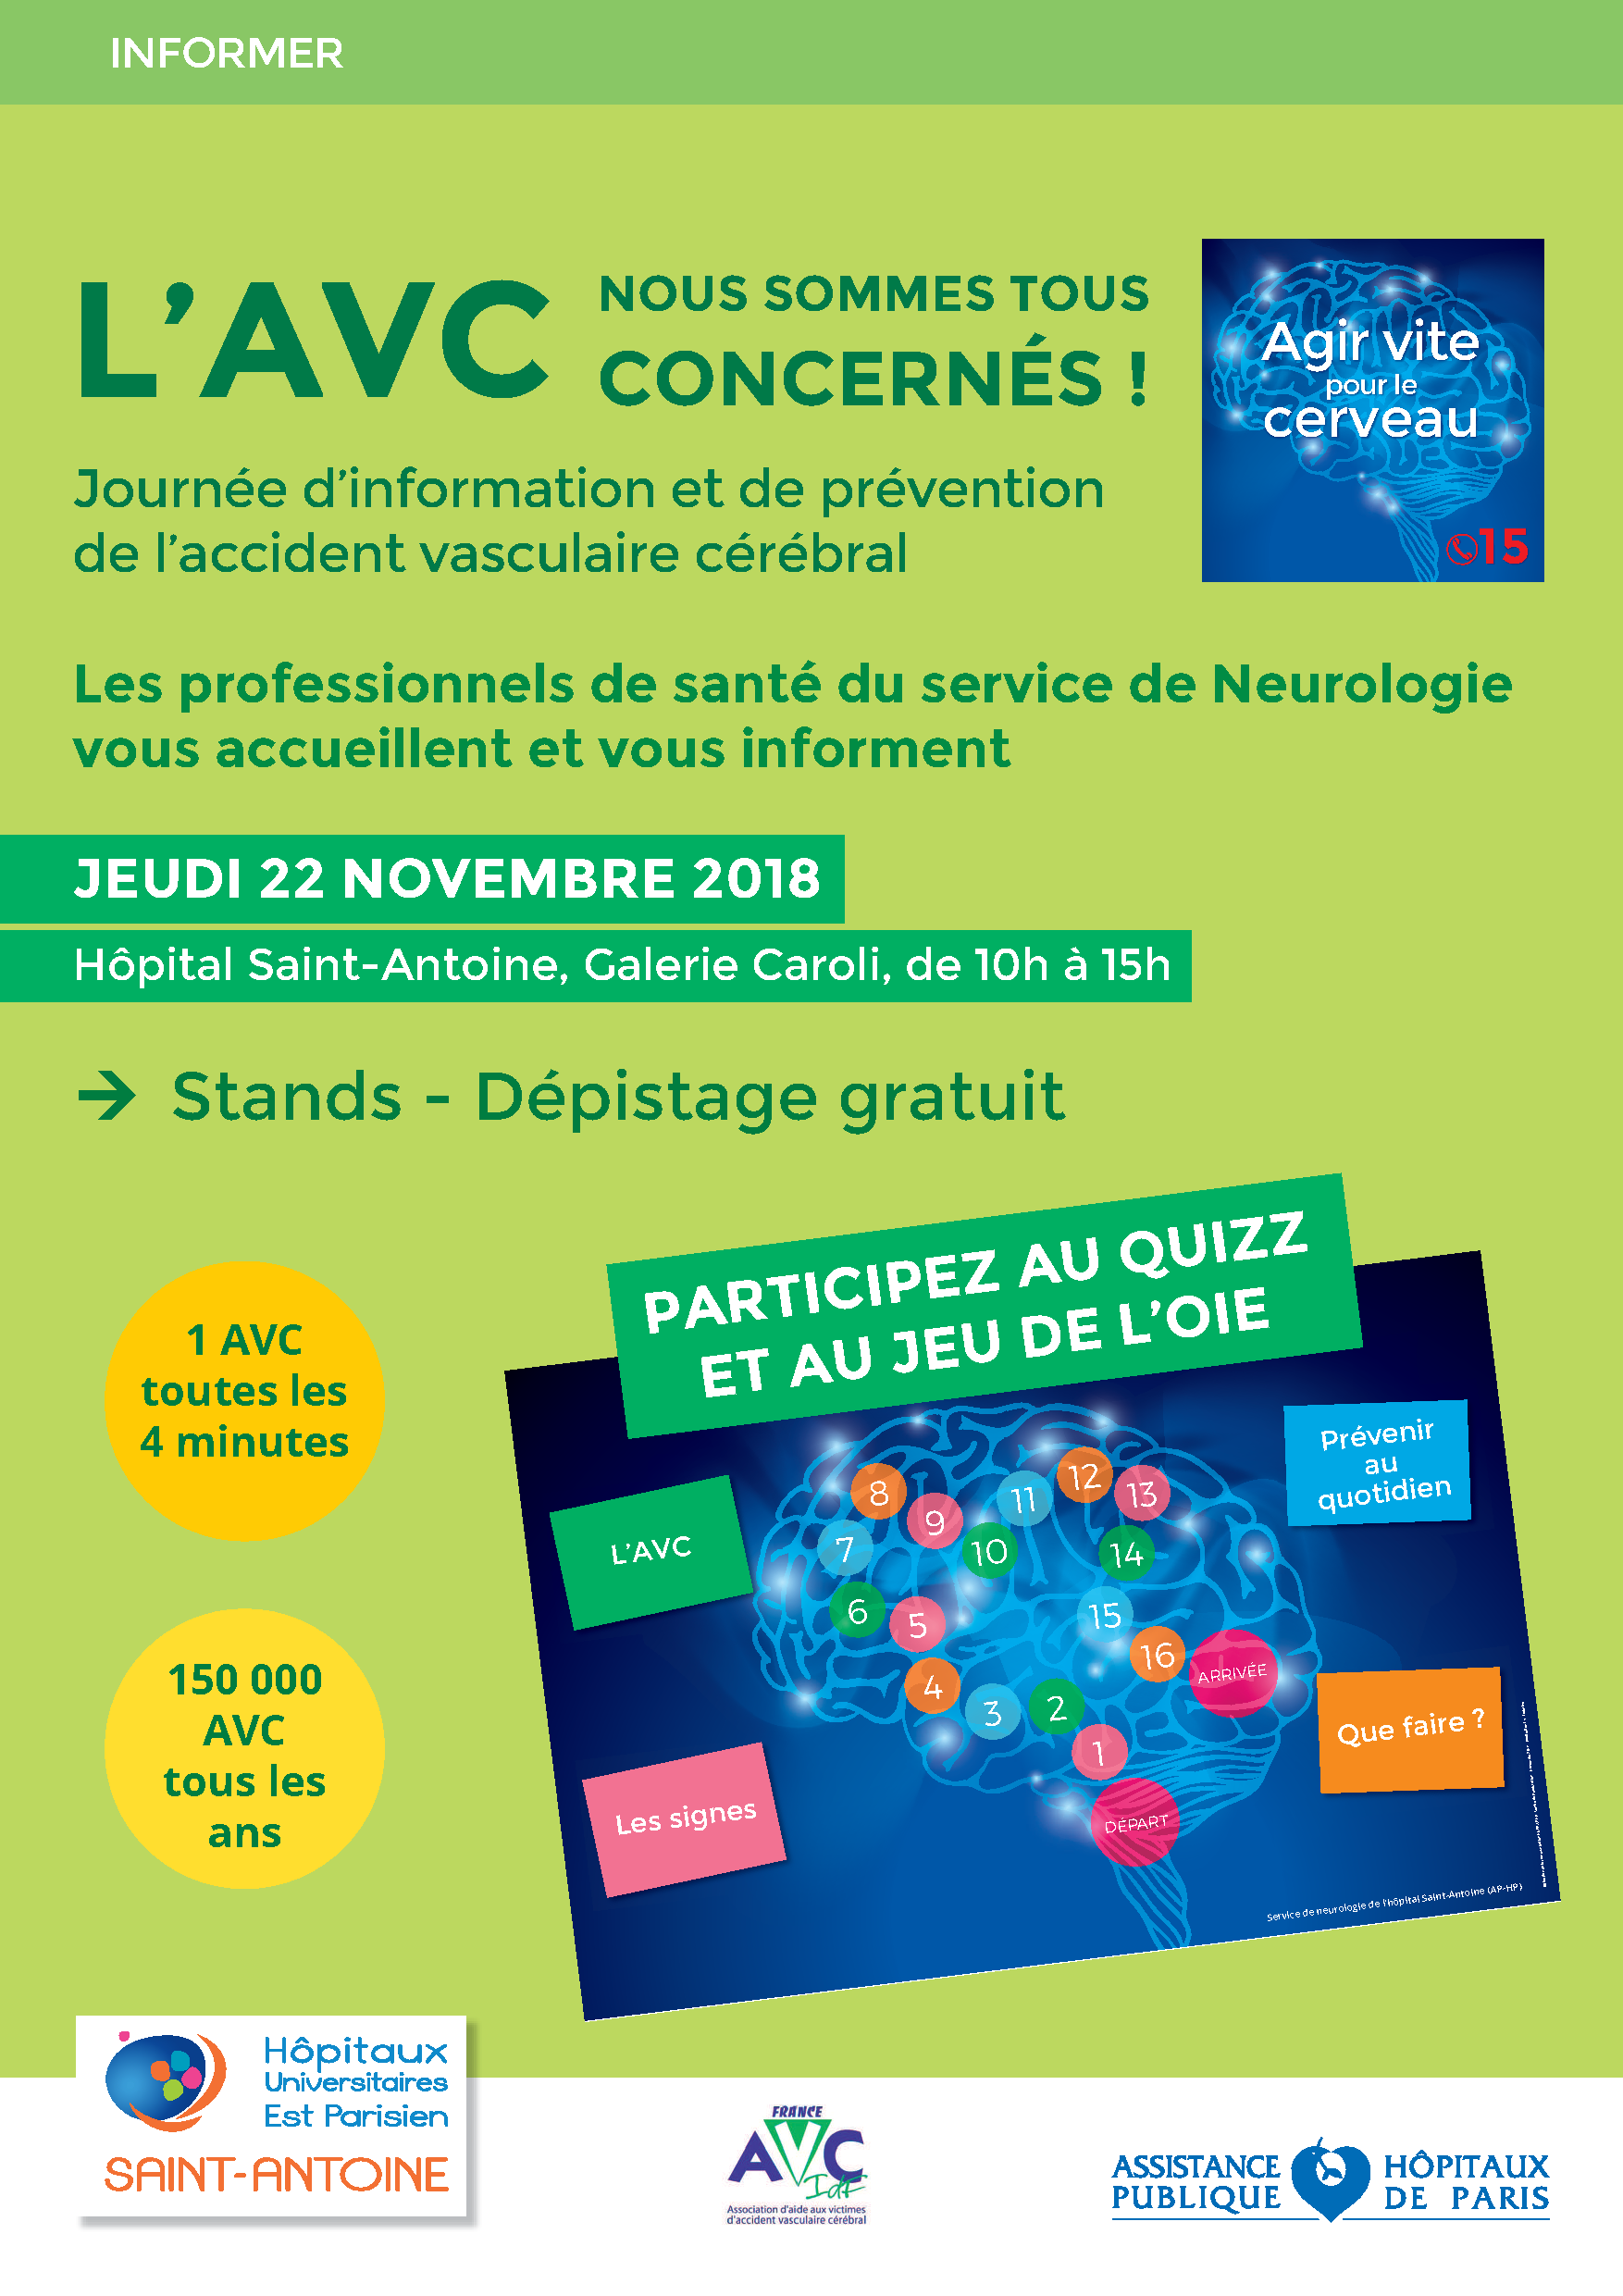 22 novembre 2018 : journée d'information et de prévention de l'accident vasculaire cérébral à l'hôpital Saint-Antoine